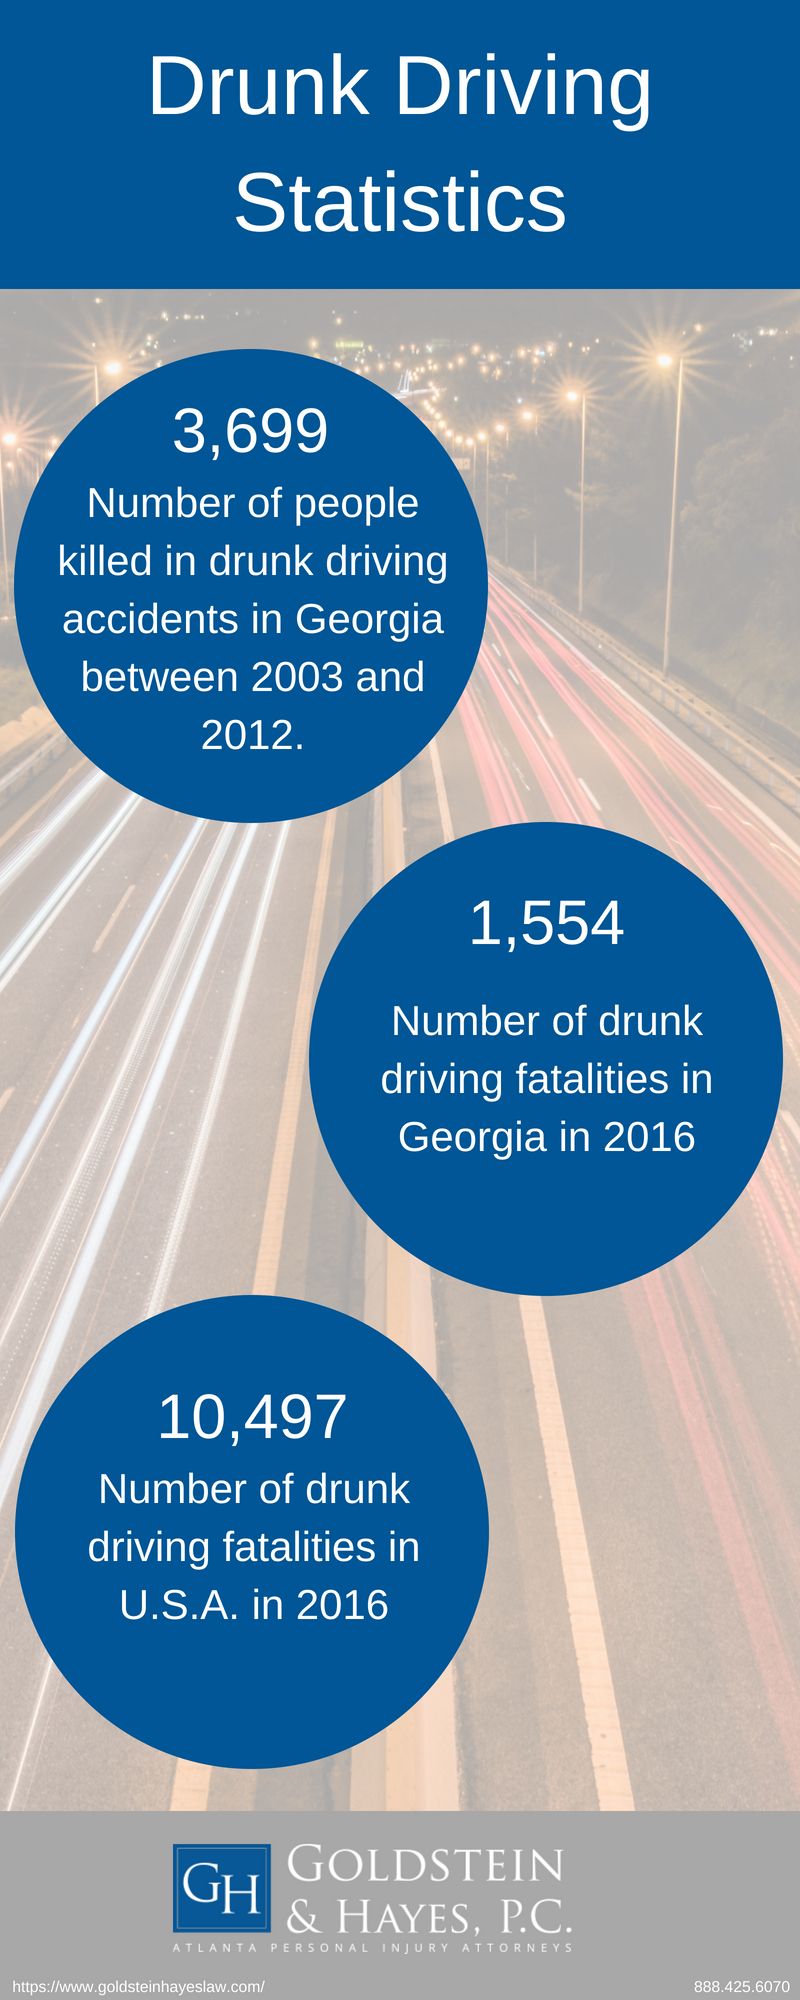 Drunk Driving Statistics: Understanding the Dangers